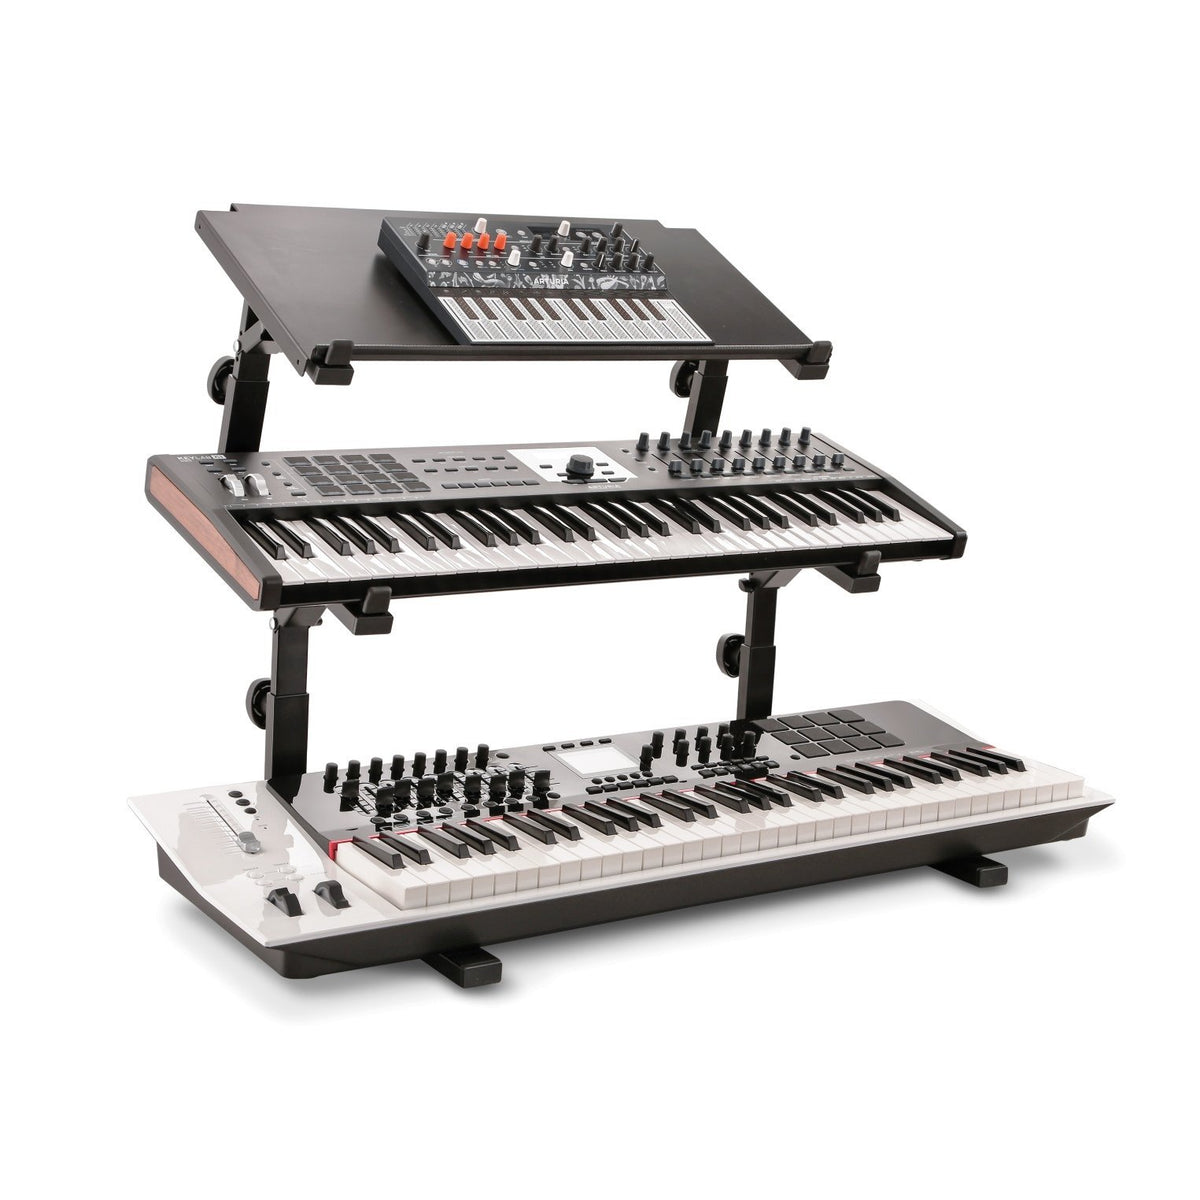 KÃ¶nig &amp; Meyer - 18828 Basic Support for &lt;Omega&gt; Keyboard Table Stand-Instrument Stand-KÃ¶nig &amp; Meyer-Music Elements